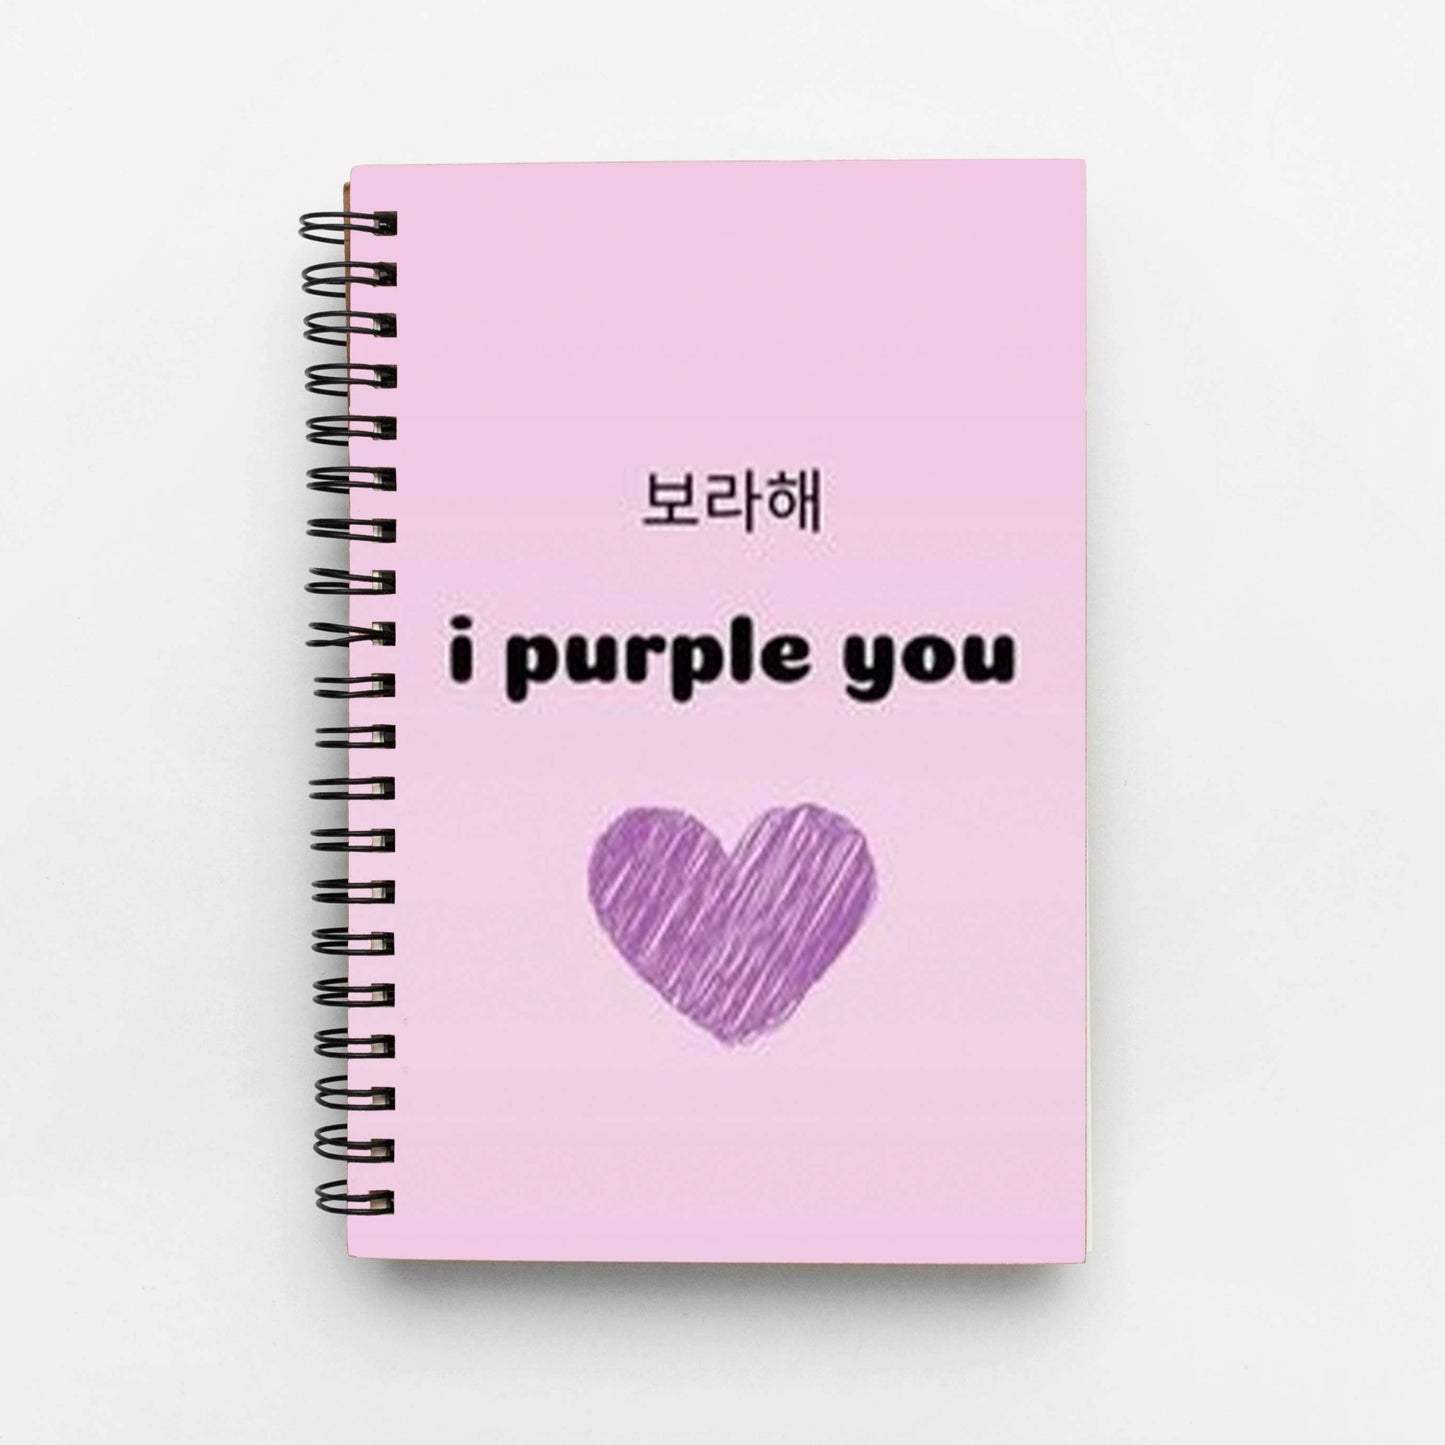 I purple you wiro notebook